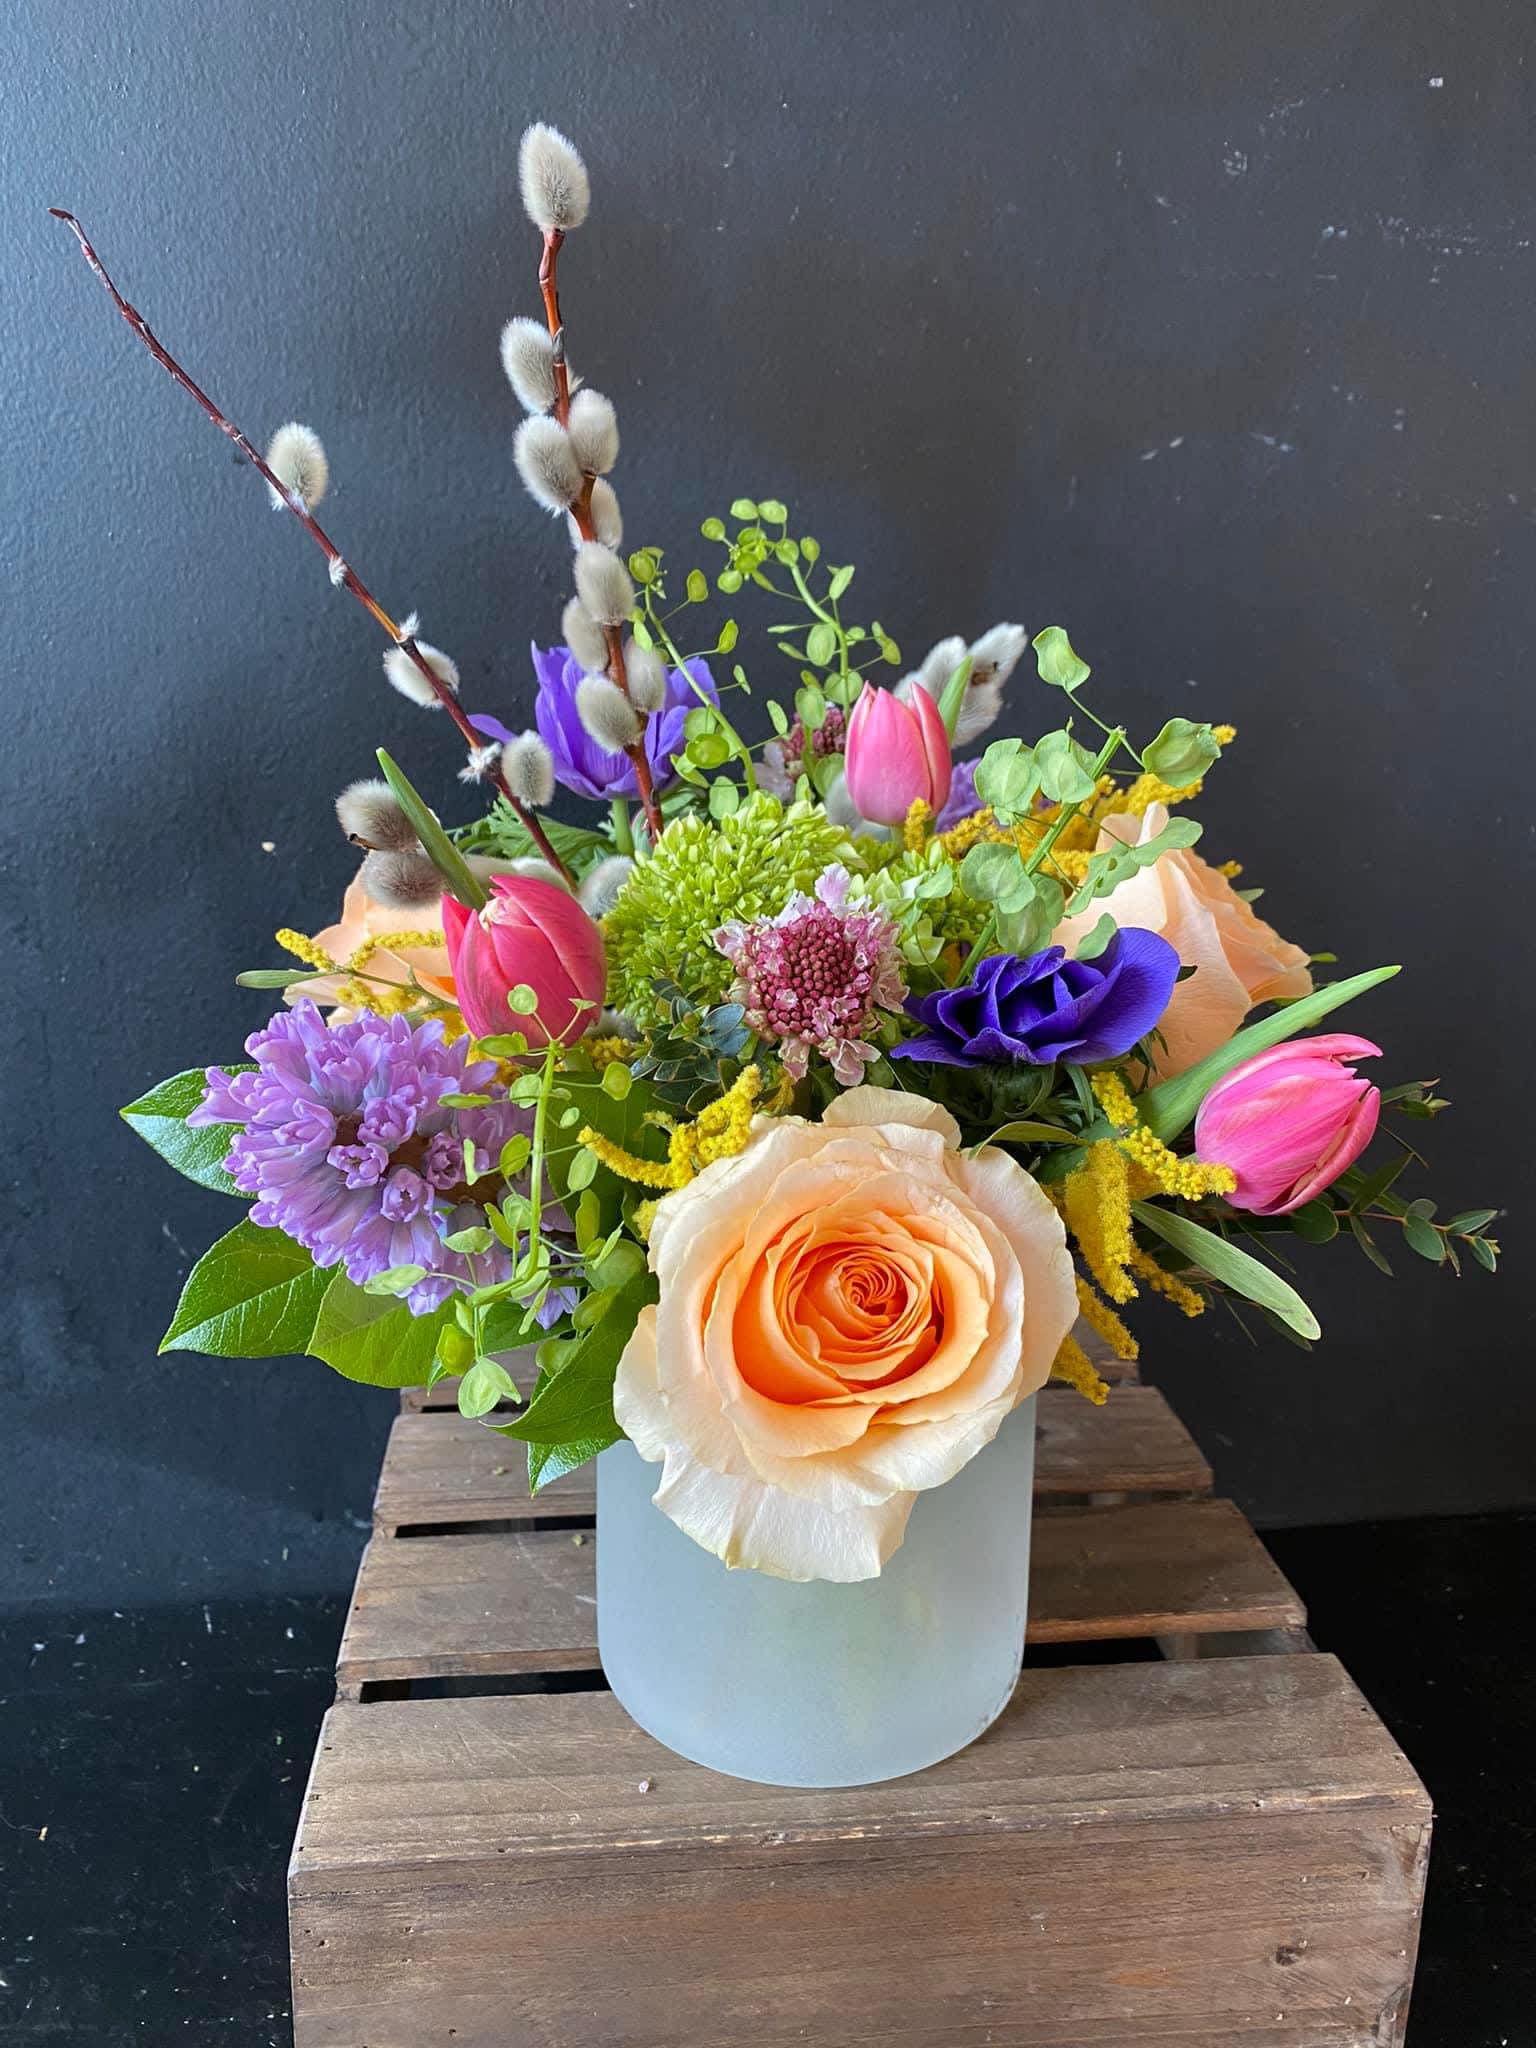 Colorful designer choice - Colorful vase arrangement